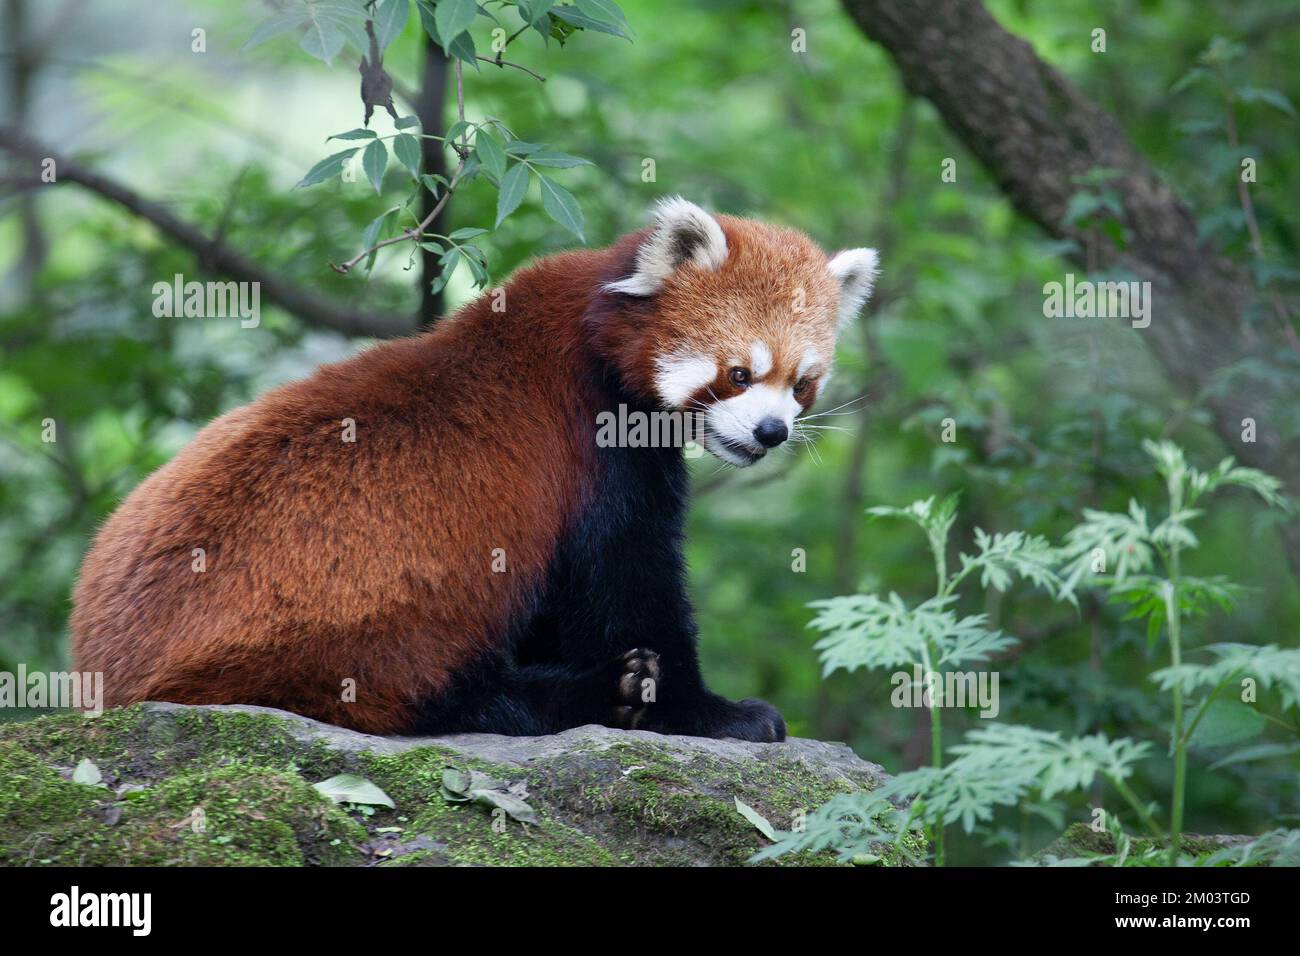 Panda rouge chinois sur un rocher dans la forêt montagnarde de la réserve naturelle de Wolong, province du Sichuan, Chine. Ailurus fulgens. Banque D'Images